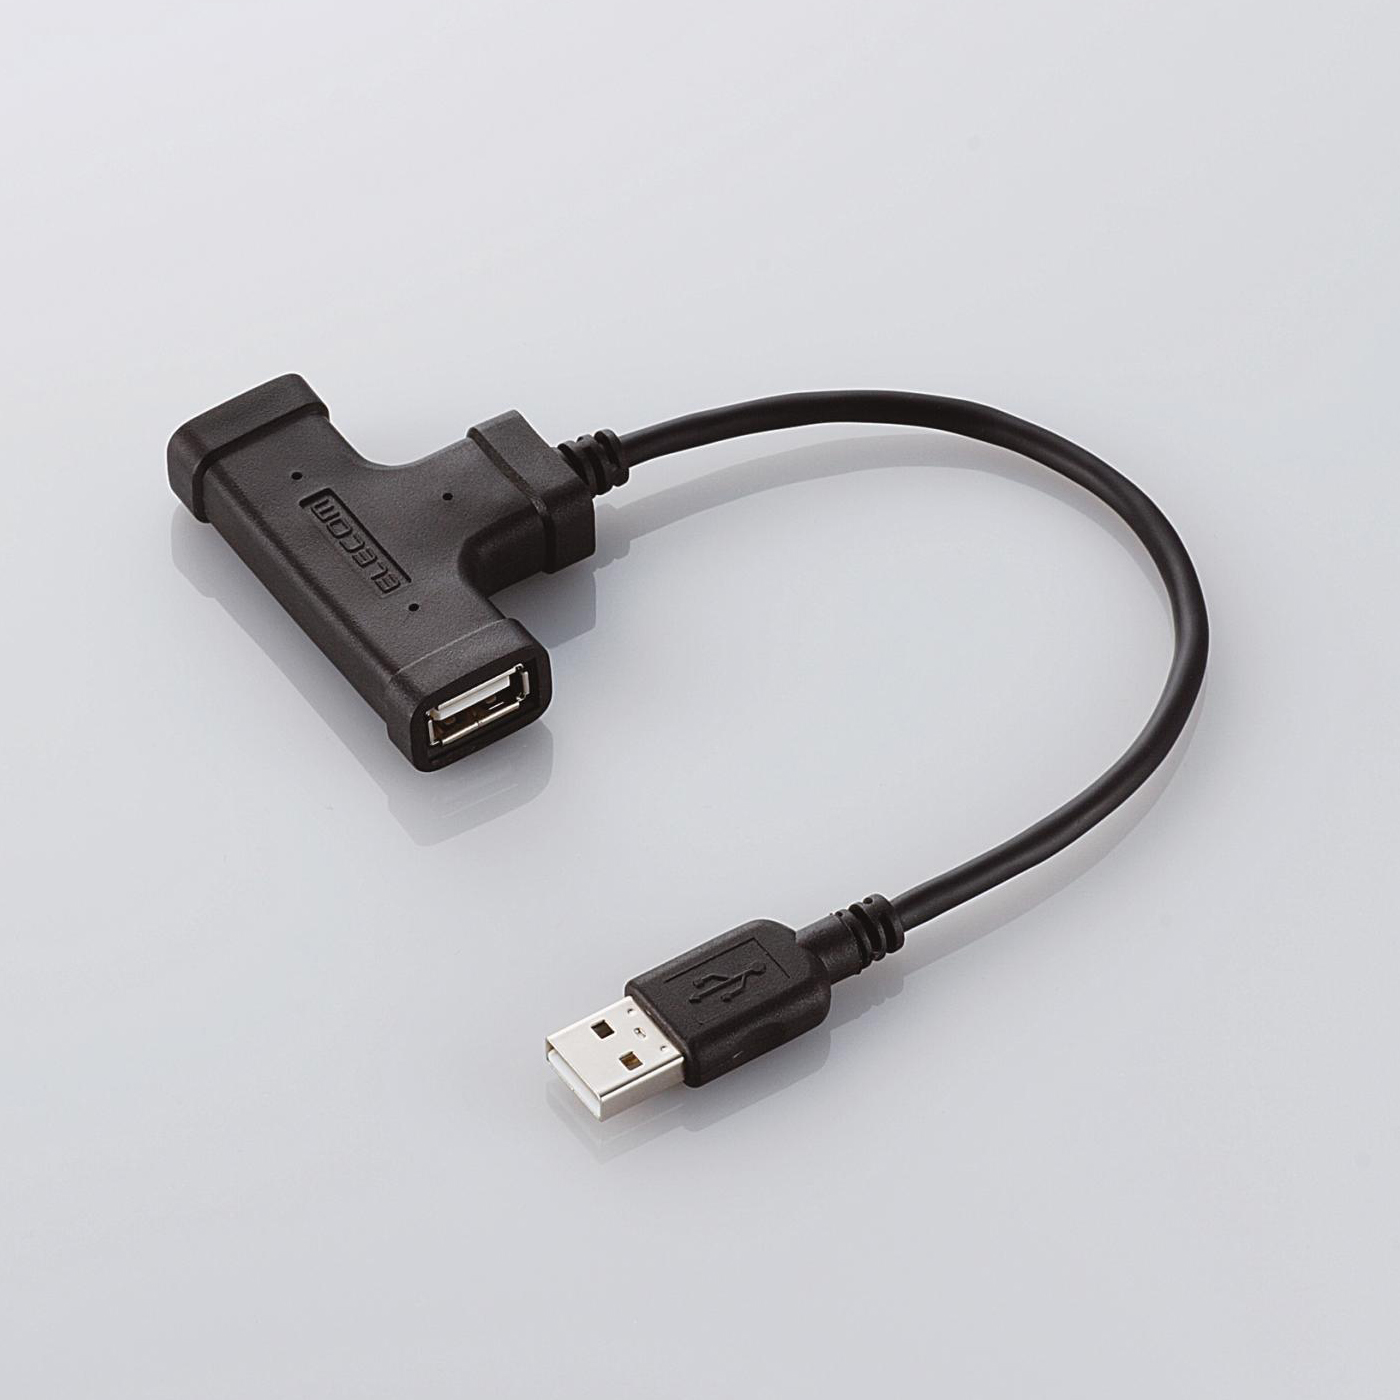 Immagine pubblicata in relazione al seguente contenuto: Da Elecom tre nuovi HUB USB 2.0 dal design atipico | Nome immagine: news4381_1.jpg